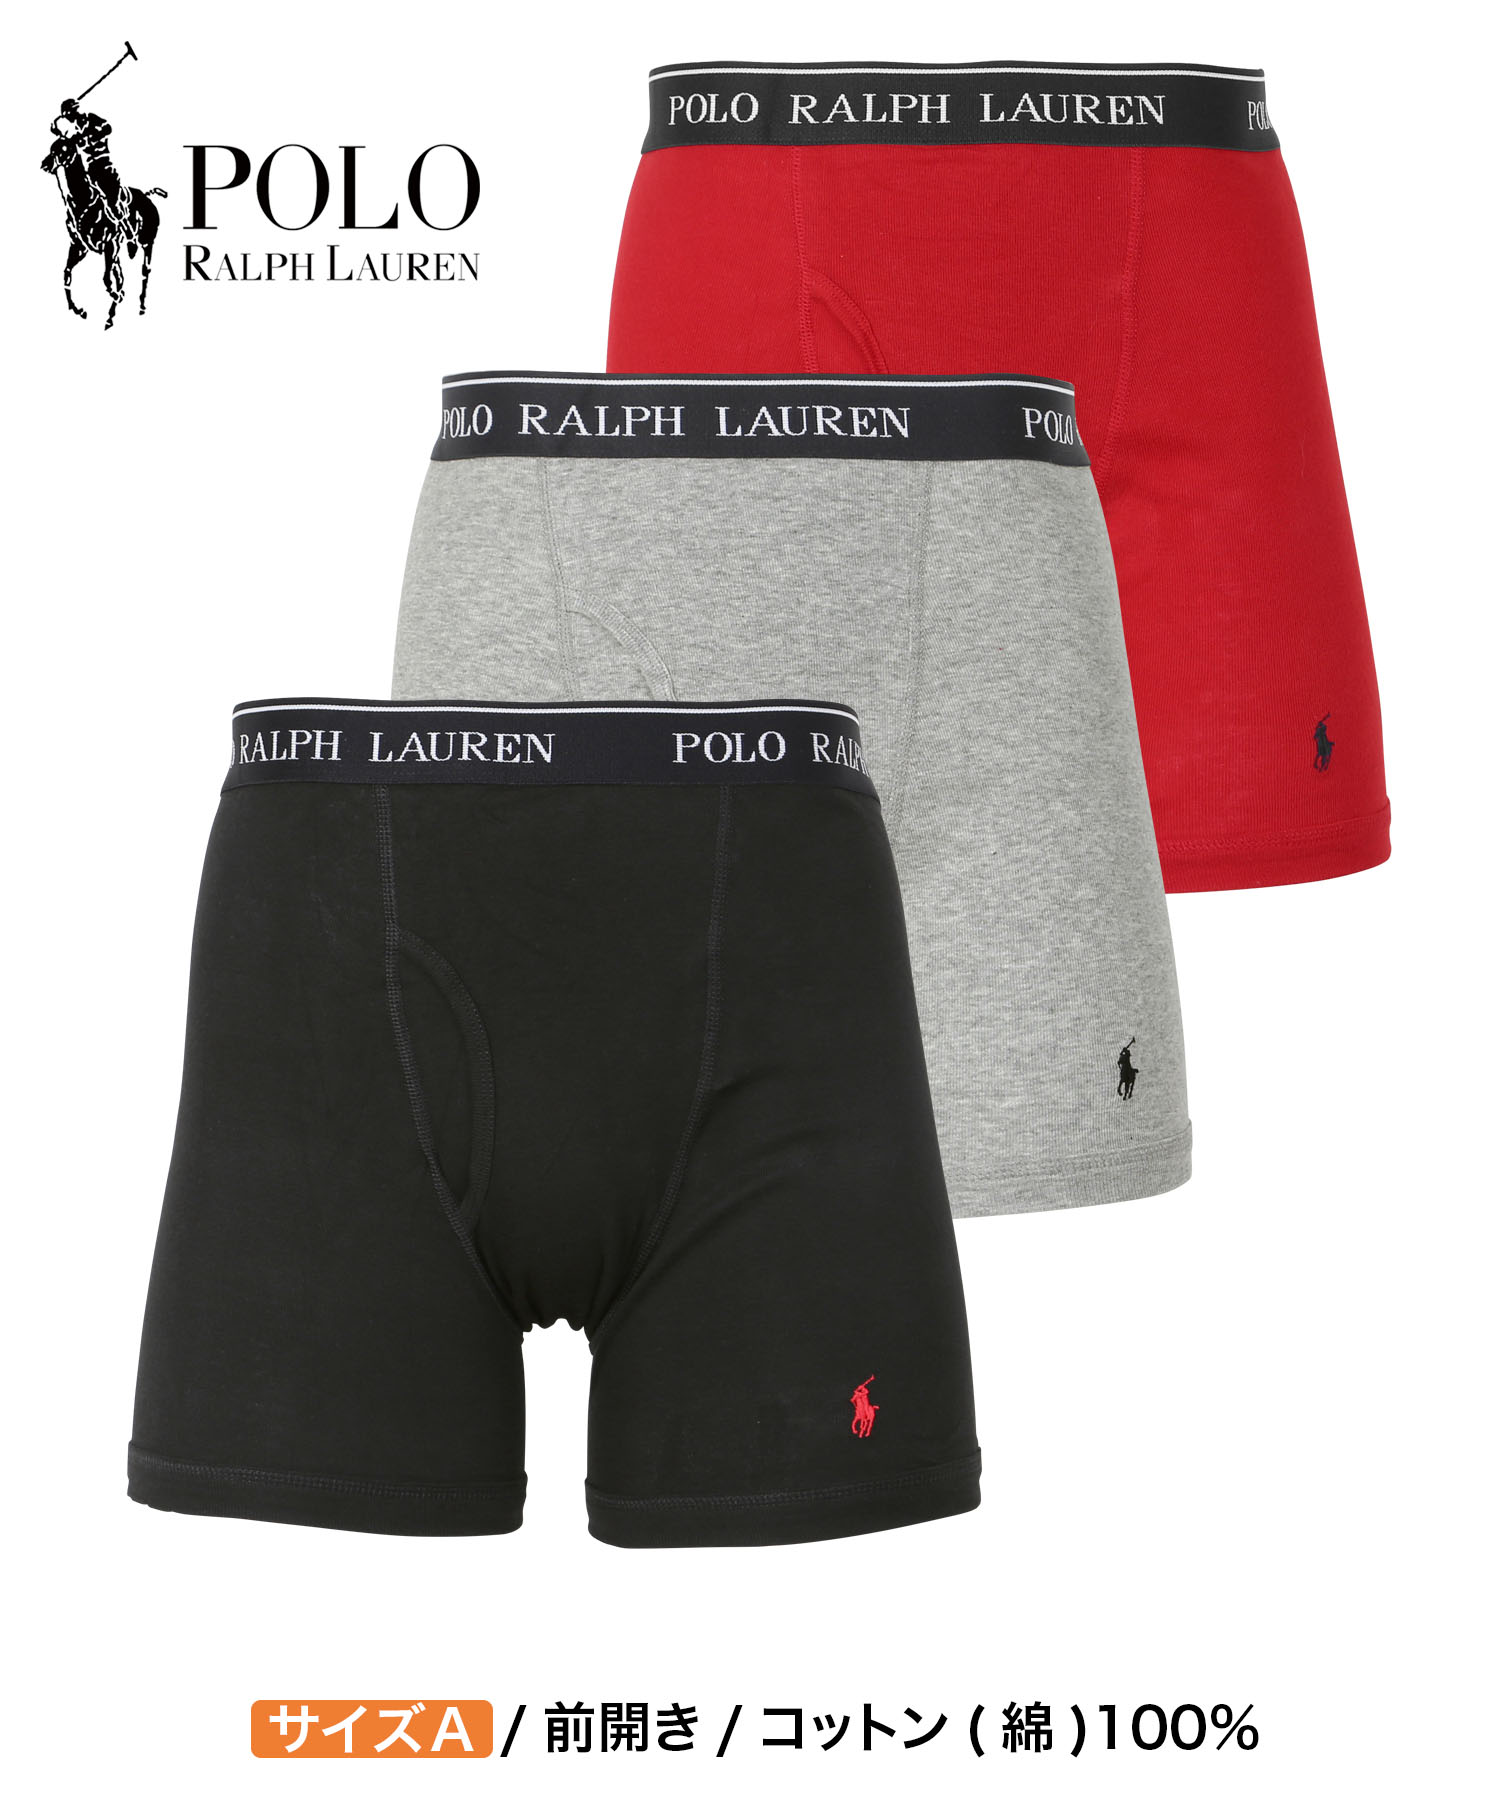 ポロ ラルフローレン POLO RALPH LAUREN ロングボクサーパンツ 3枚セット メンズ アンダーウェア コットン100% 綿 前開き  ブランド ロゴ 高級 ハイブランド